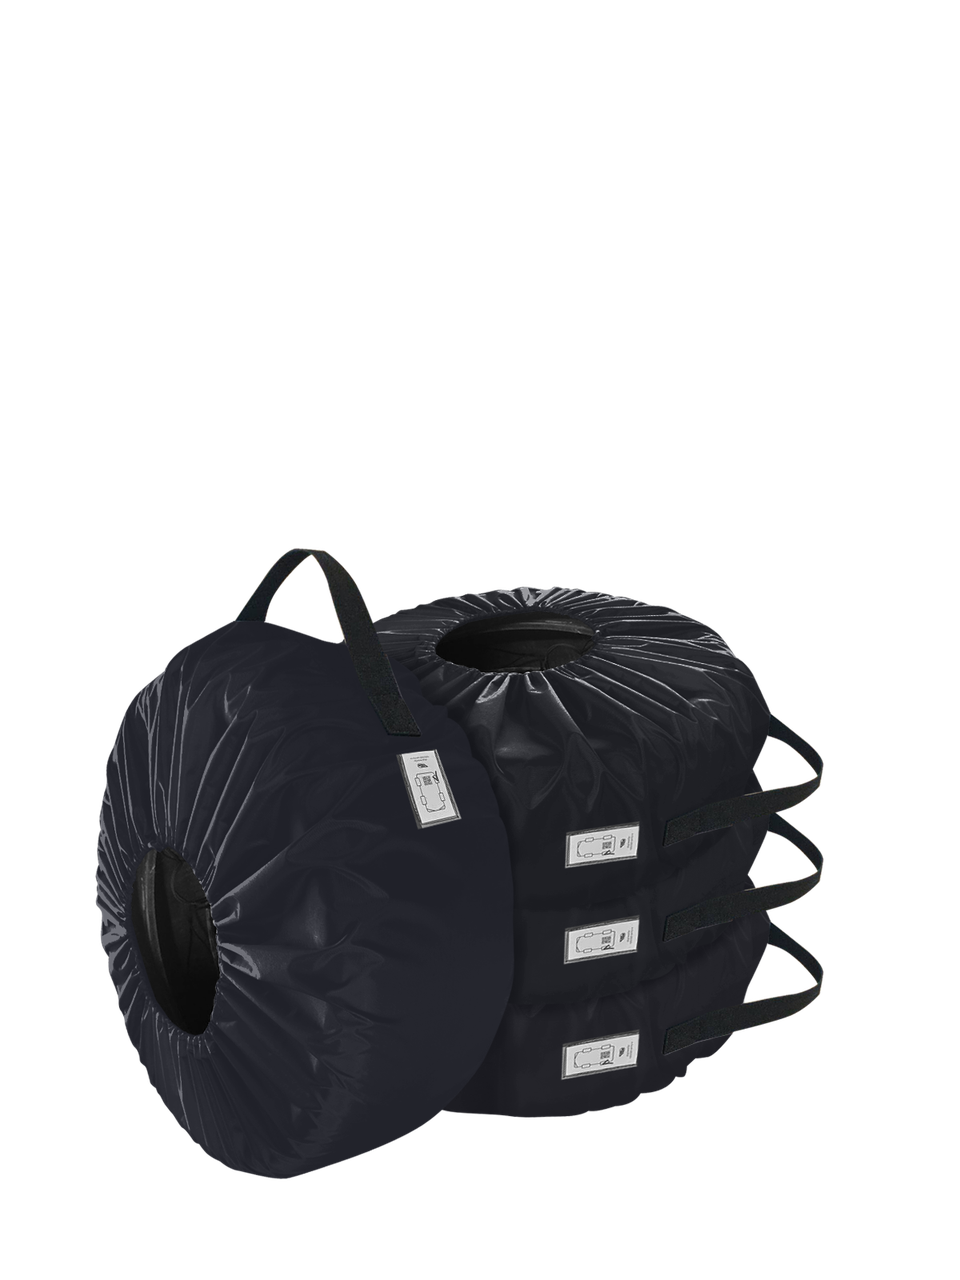 Комплект чохлів для коліс Coverbag Eco XL синій 4шт.